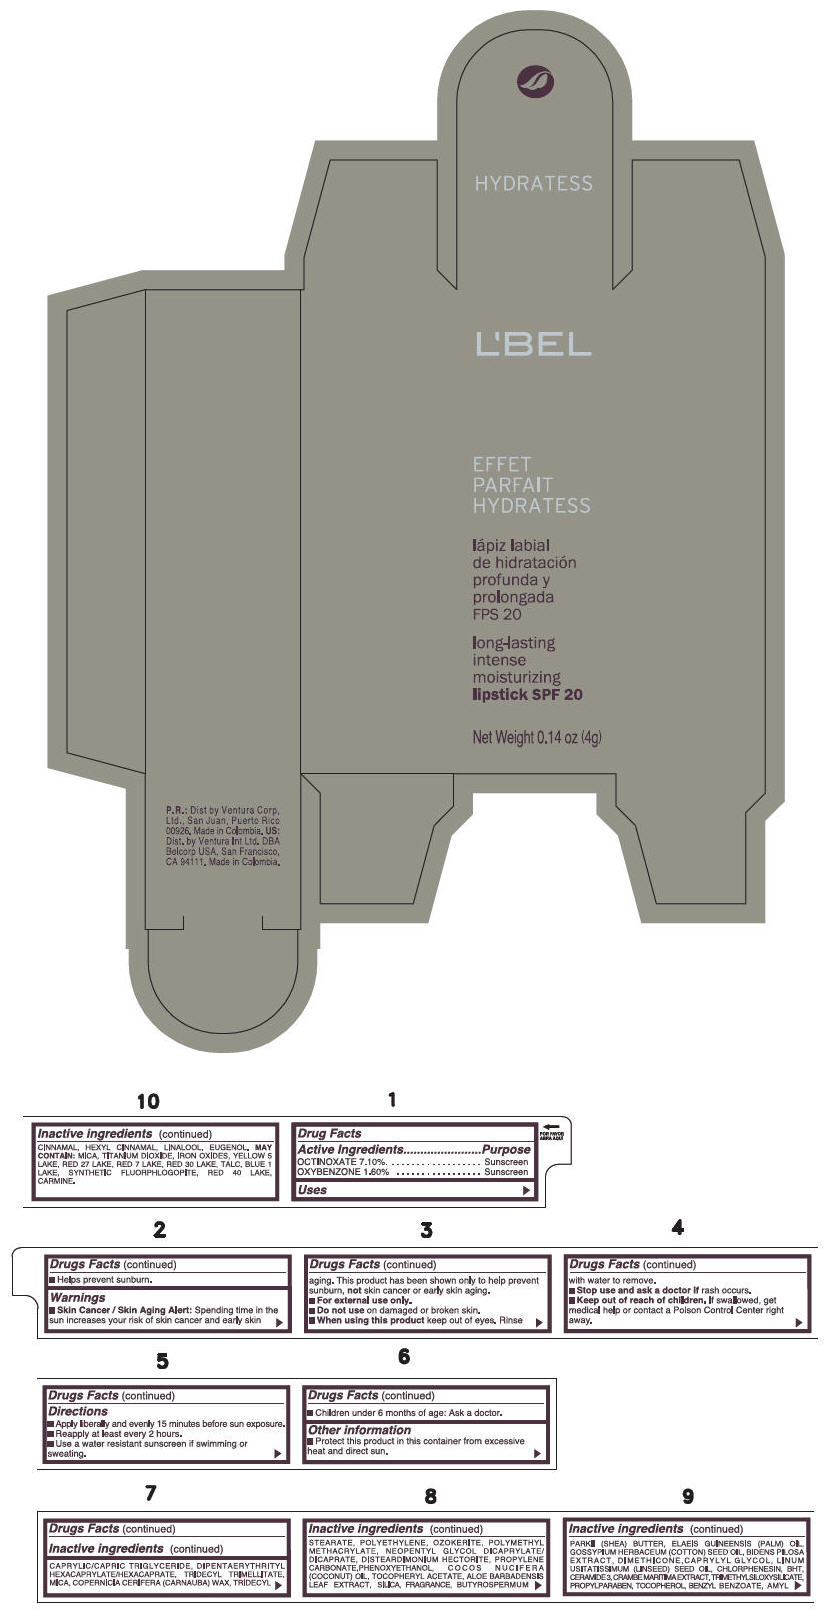 PRINCIPAL DISPLAY PANEL - 4 g Tube Box - (MARRON GLACE) - BROWN